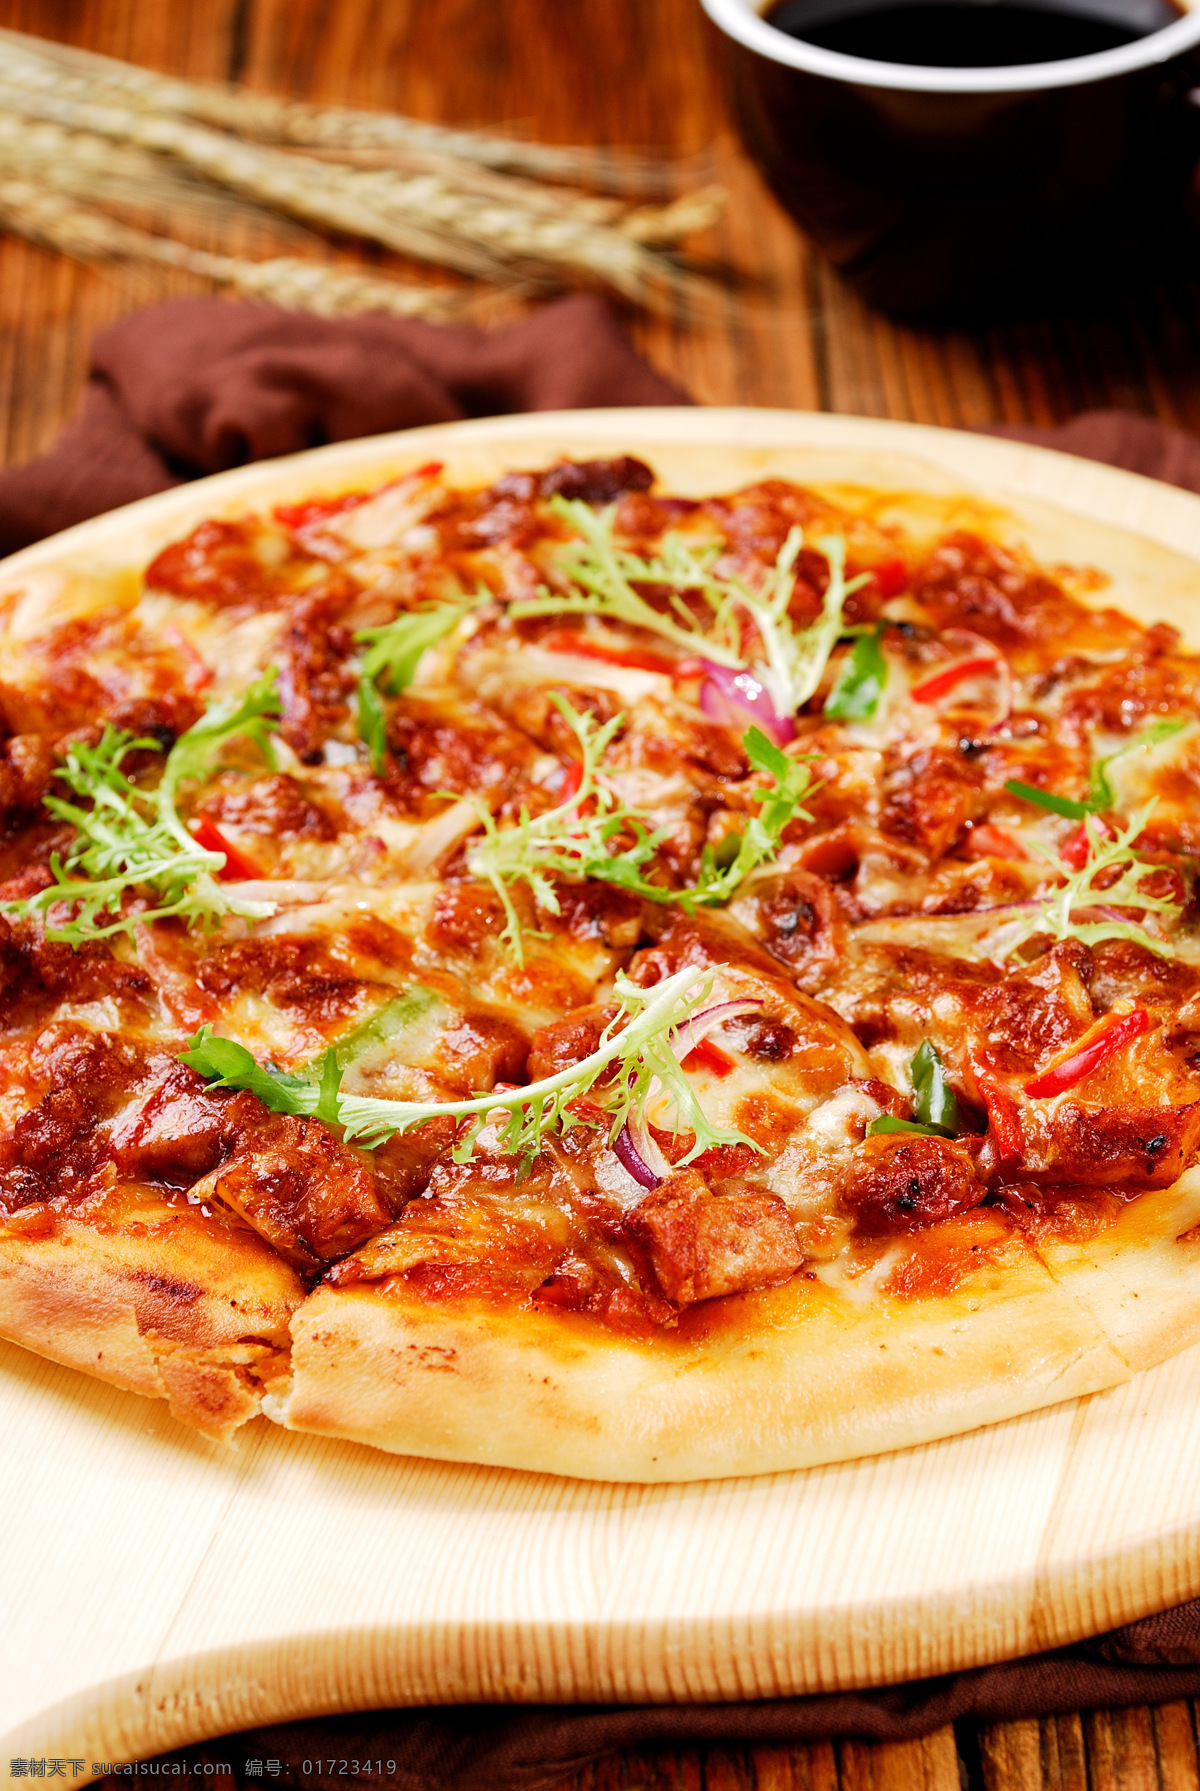 米兰 烤鸡 披萨 pizza 比萨 刚出炉的披萨 意大利披萨 培根披萨 香肠披萨 芝士披萨 水果披萨 海鲜披萨 榴莲披萨 夏威夷披萨 牛肉披萨 鸡肉披萨 烤肠披萨 餐饮美食 西餐美食